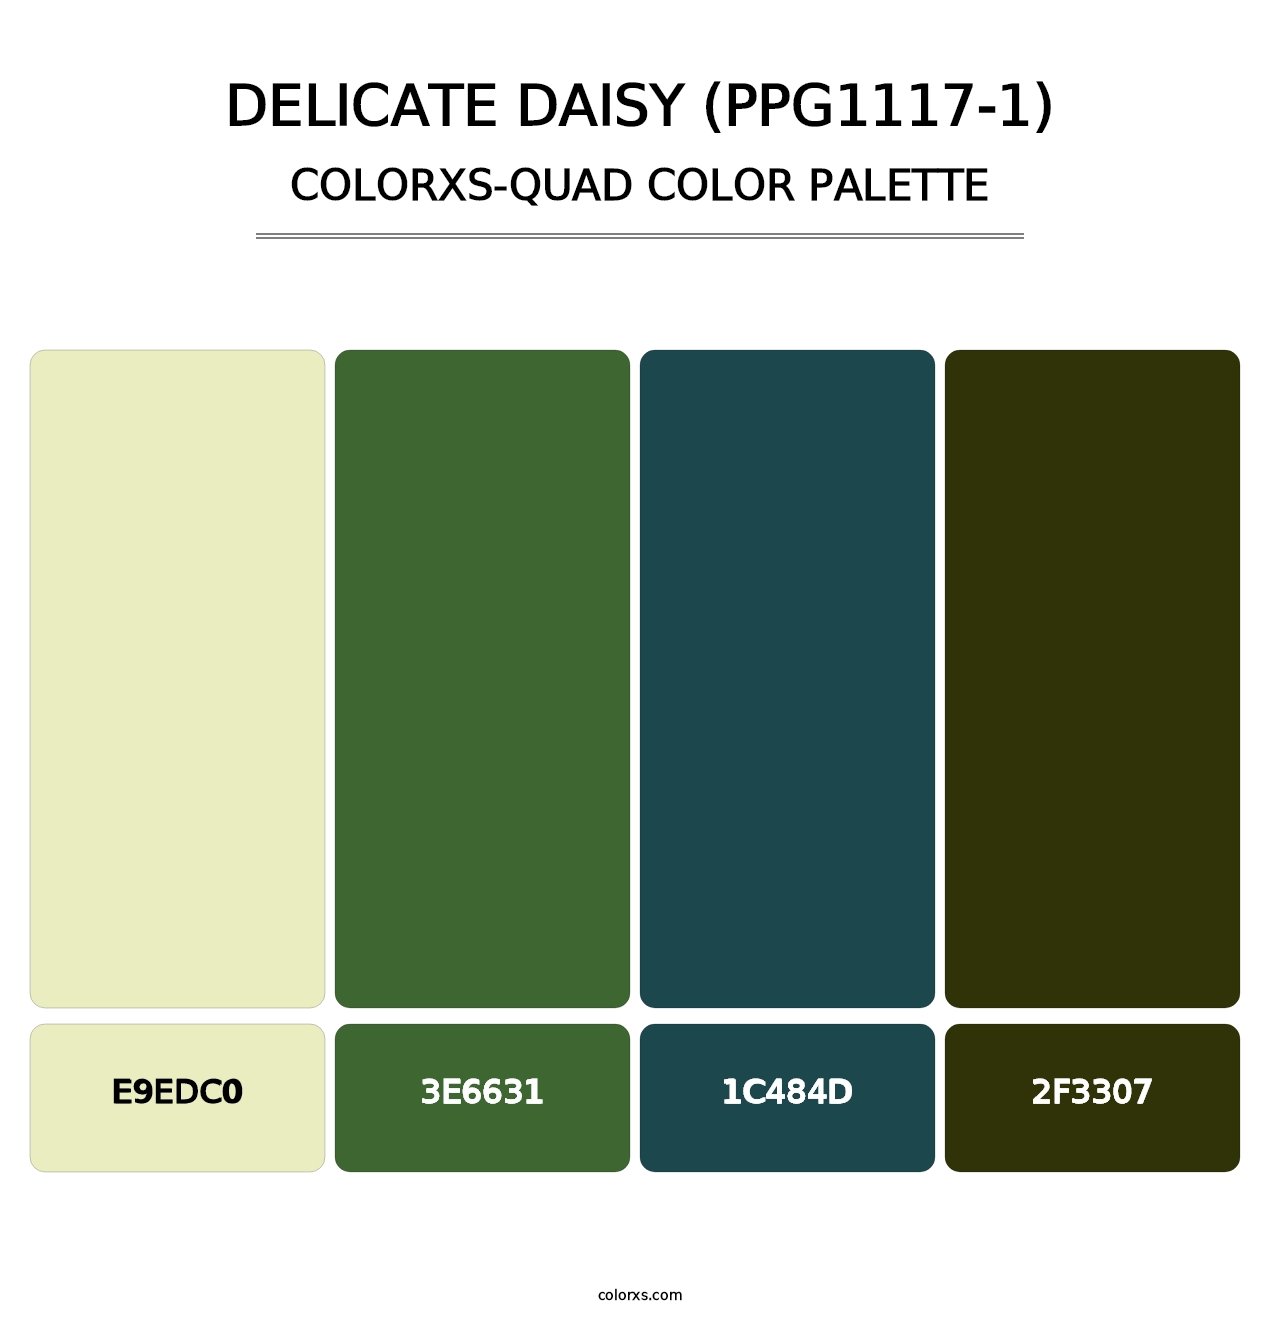 Delicate Daisy (PPG1117-1) - Colorxs Quad Palette